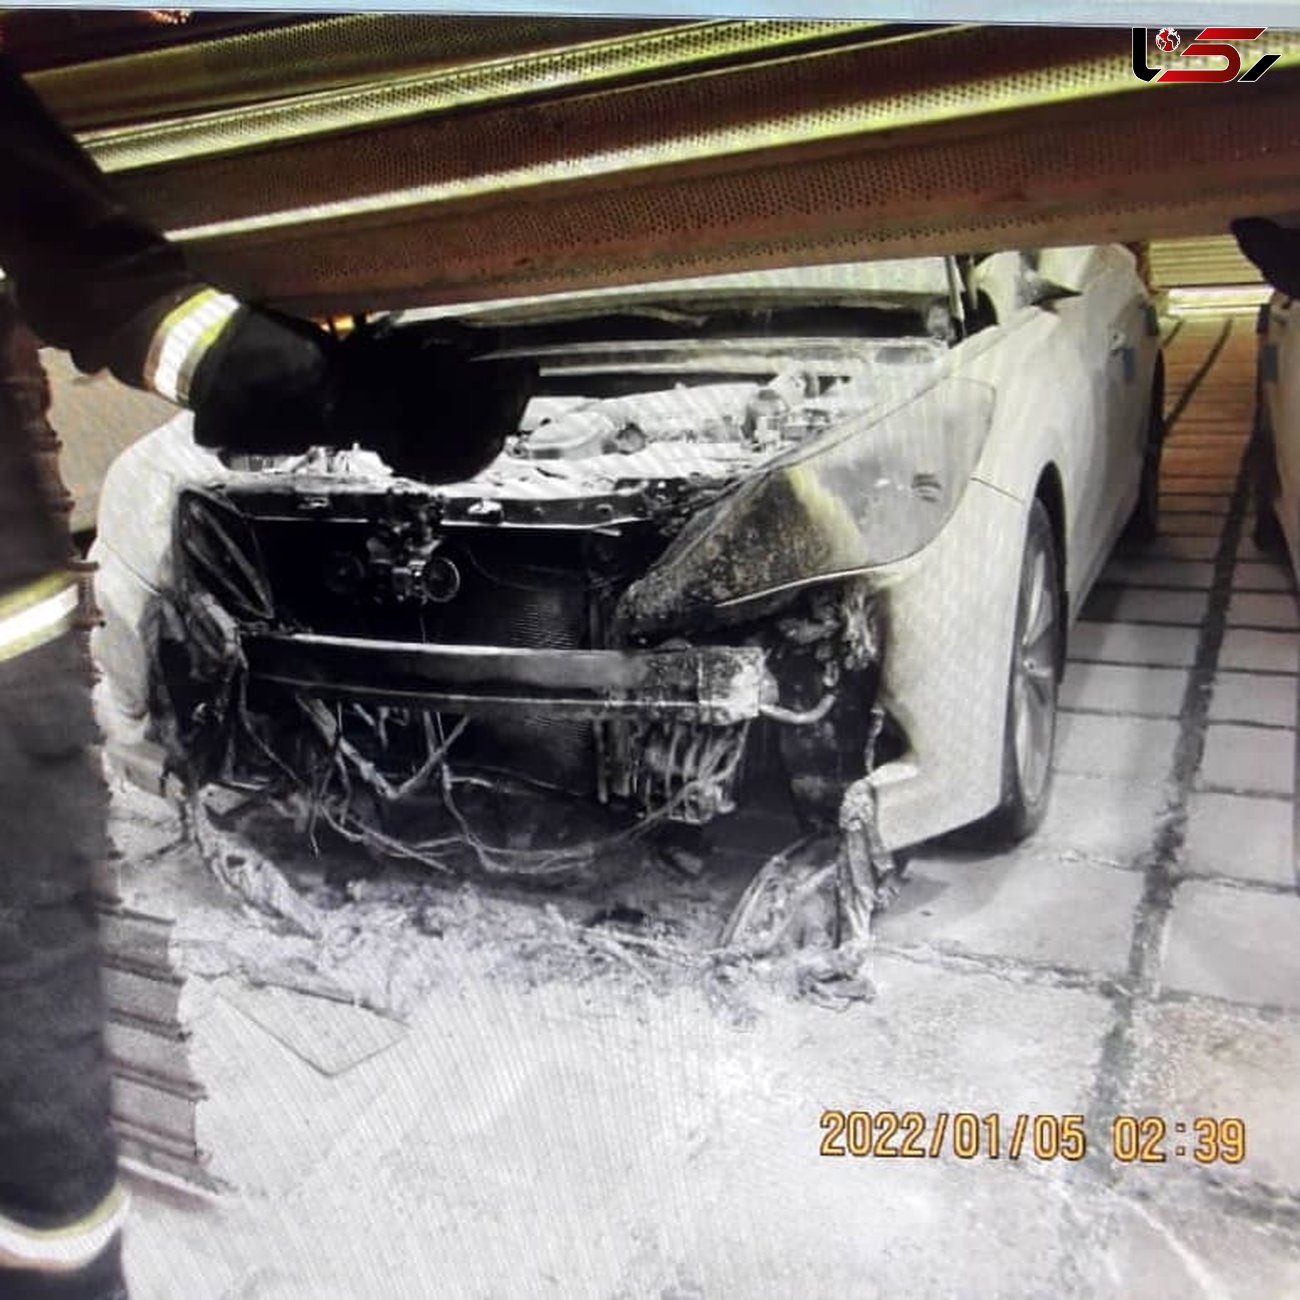 خودرو هیوندا در آتش سوخت/فرد ناشناس قصد آتش زدن کل نمایشگاه را داشت/به همراه عکس